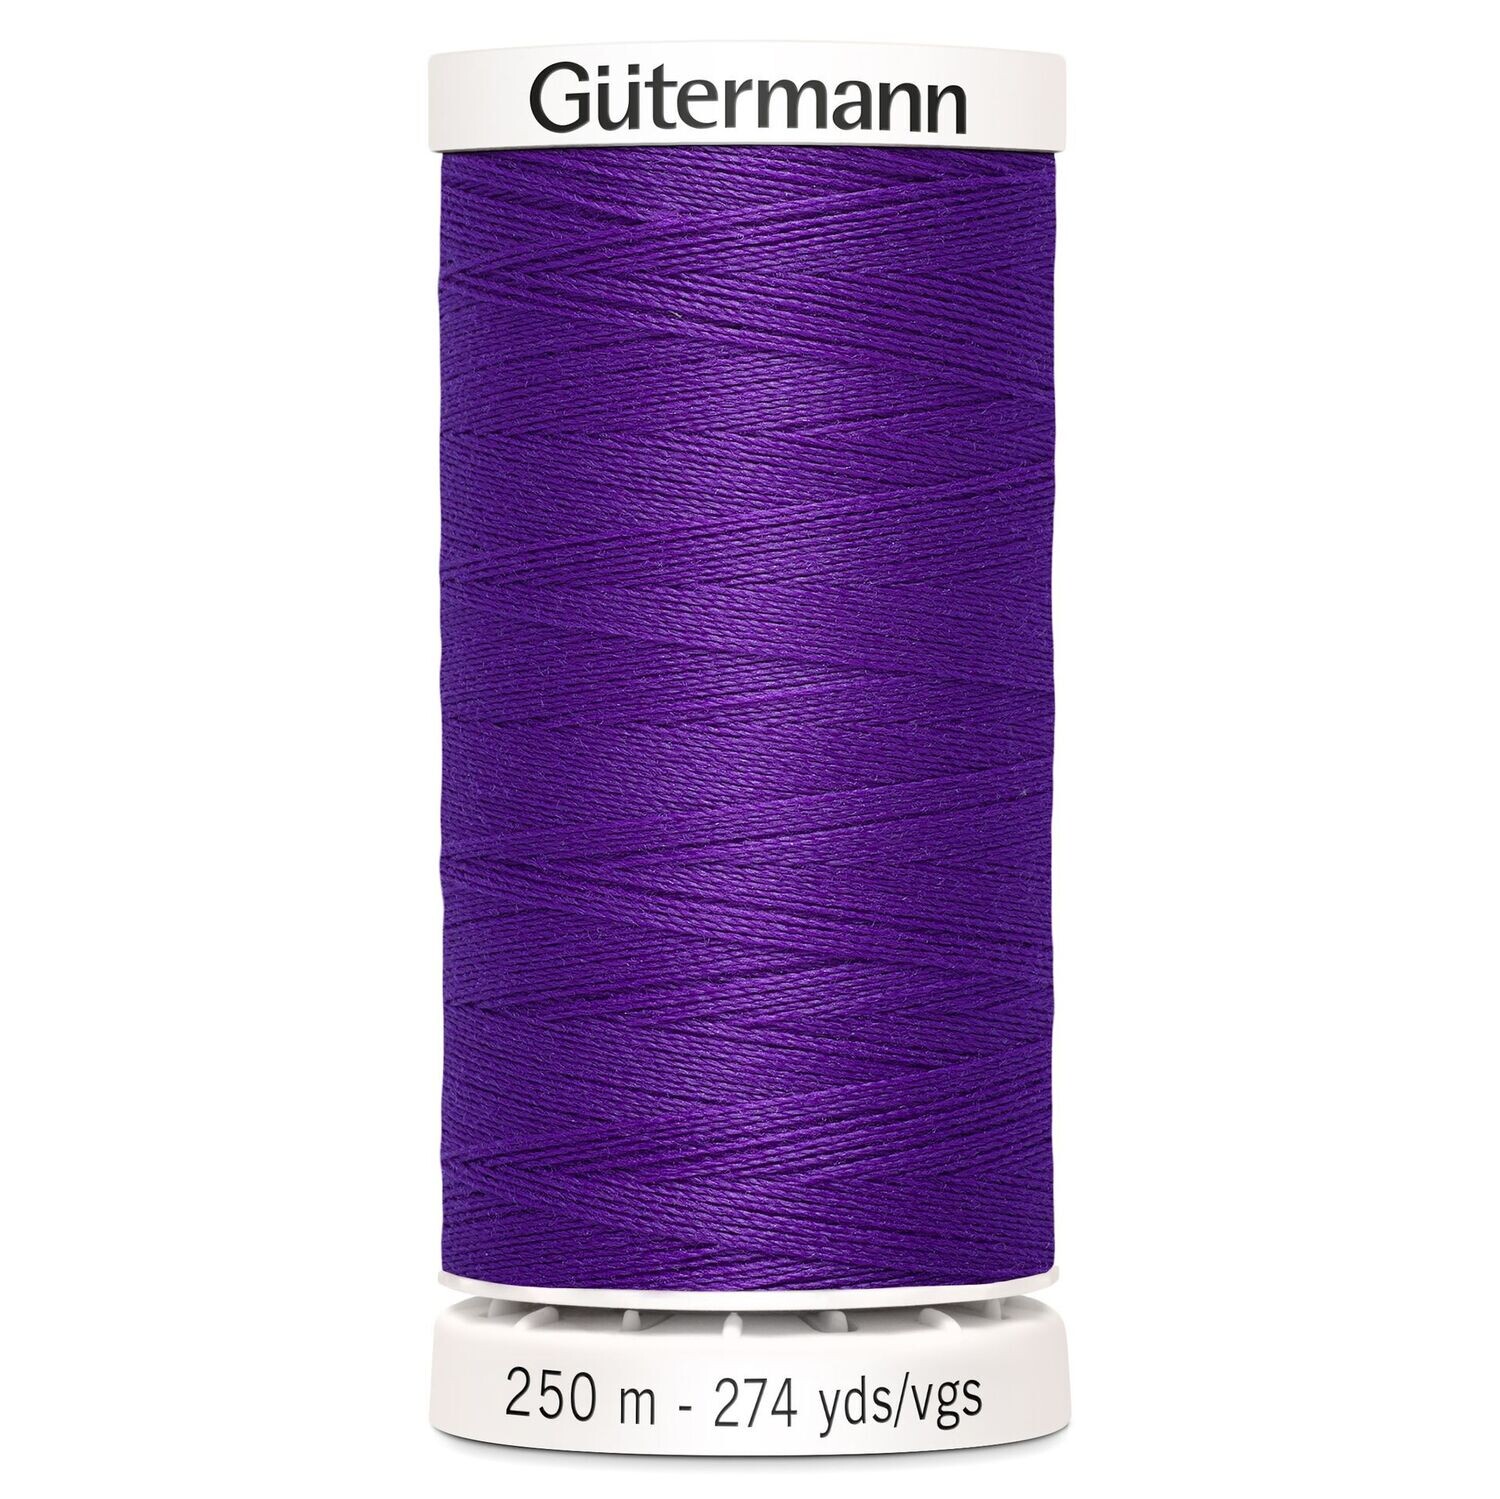 Sew All Thread 250m - Gutermann - Colour 392